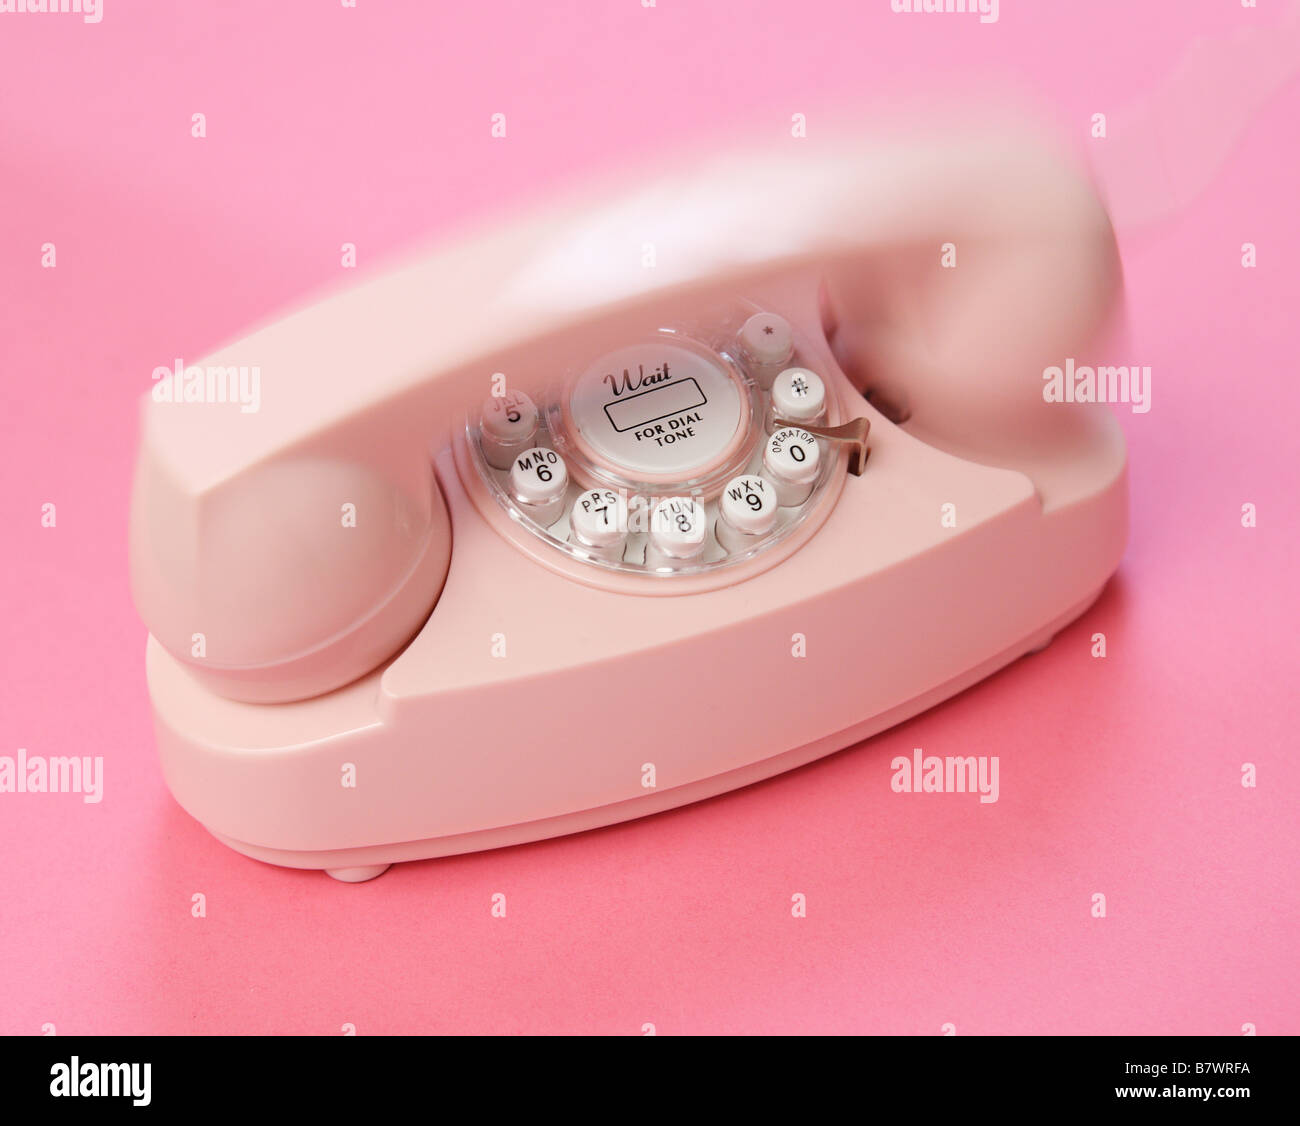 ein rosa Telefon auf einem rosa Hintergrund erscheinen in Ring  Stockfotografie - Alamy